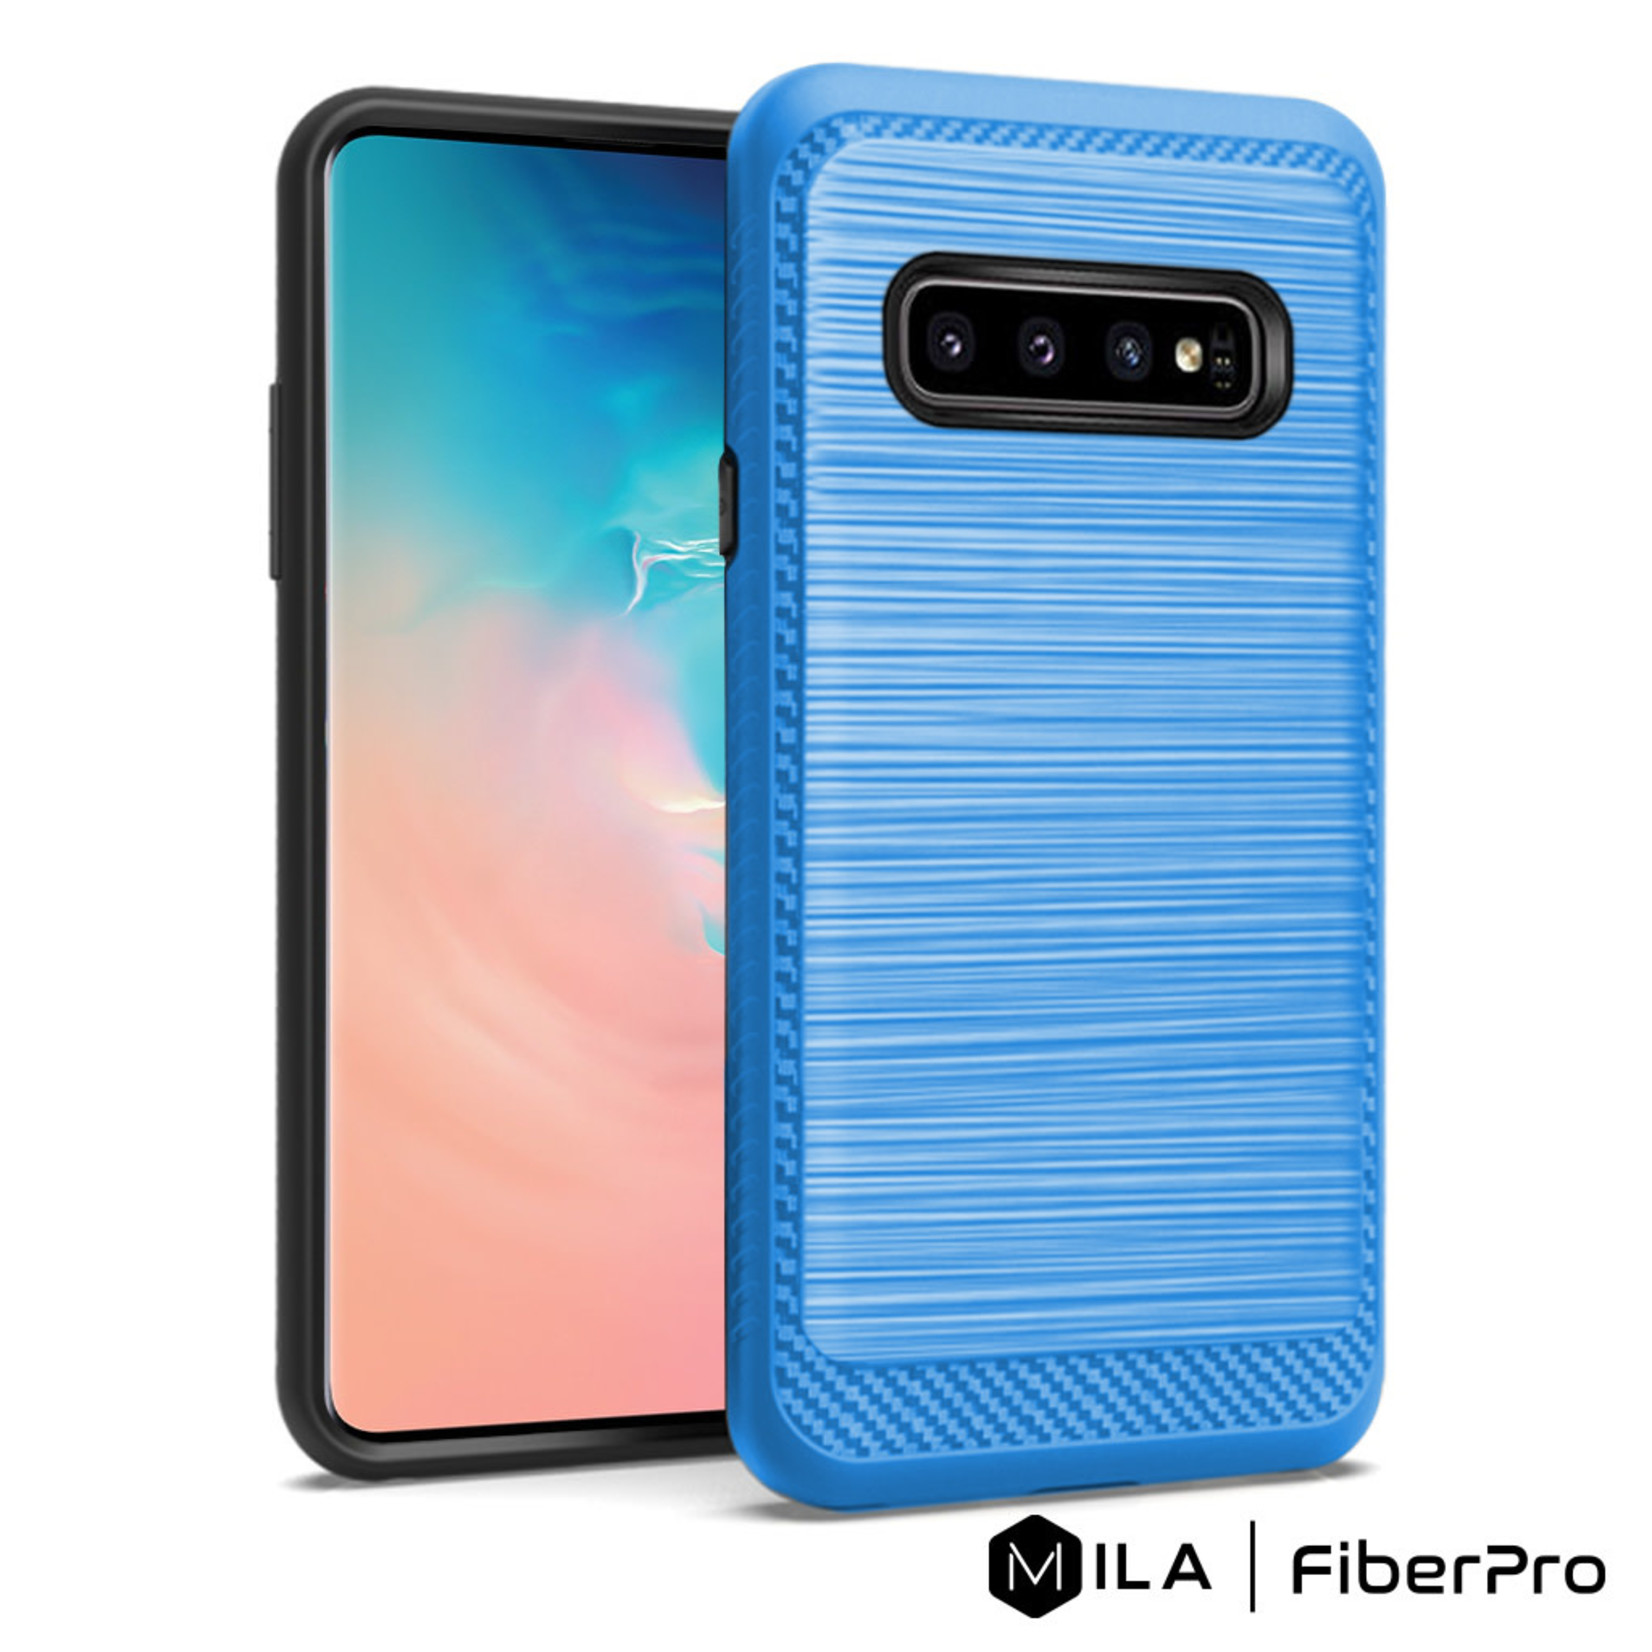 MILA | FiberPro Case for Galaxy S10